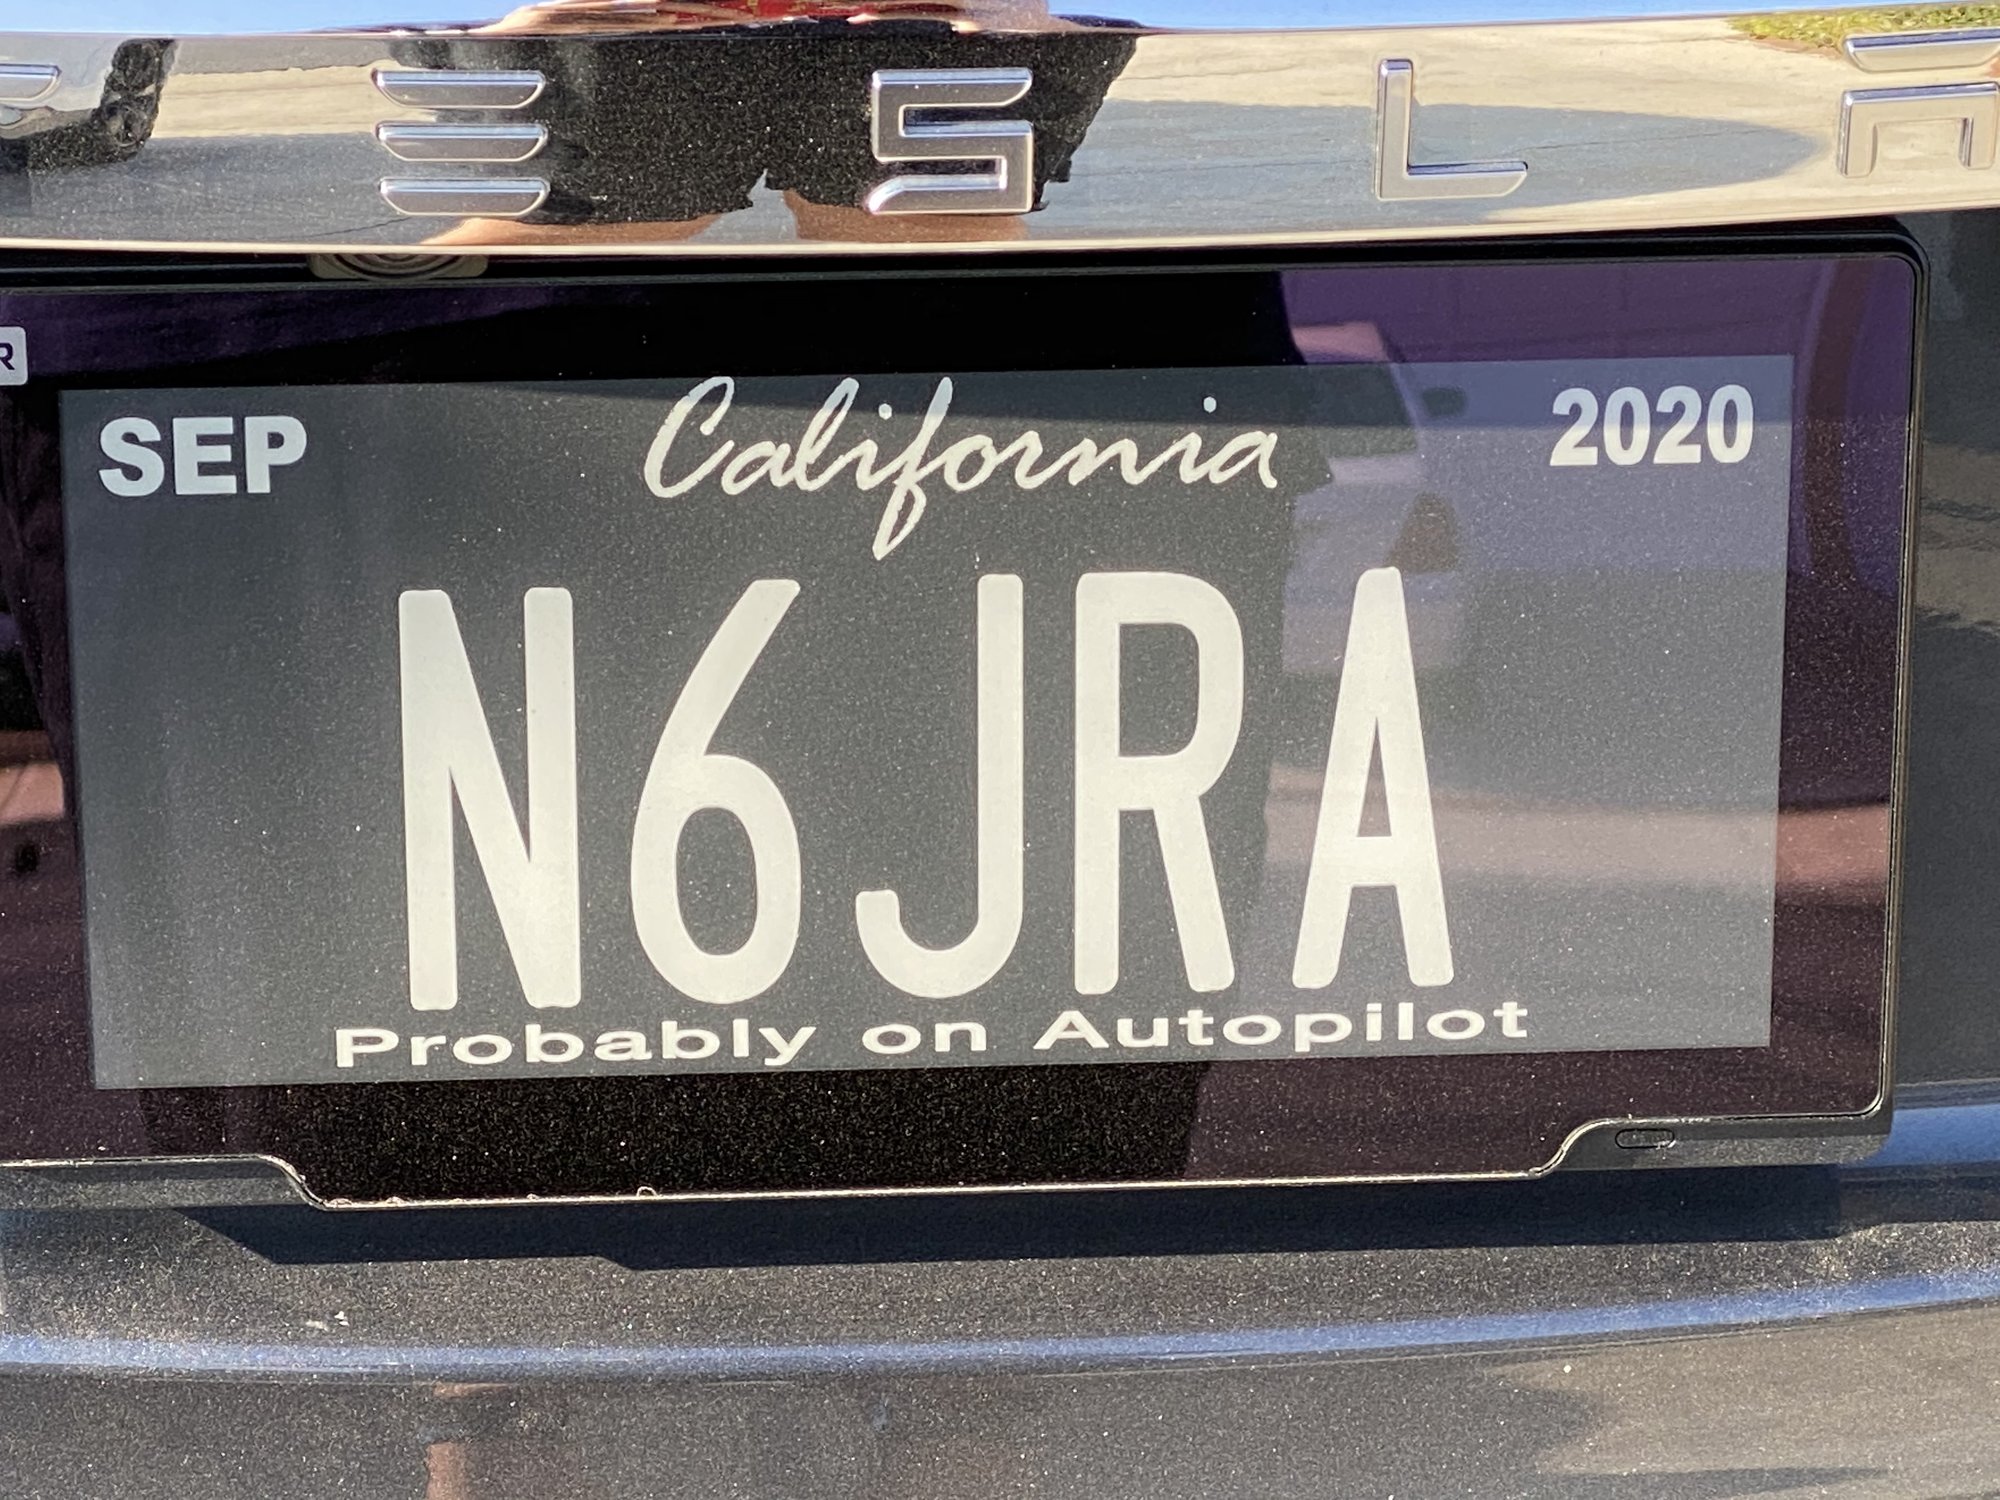 Digital license plates now have Tesla messages